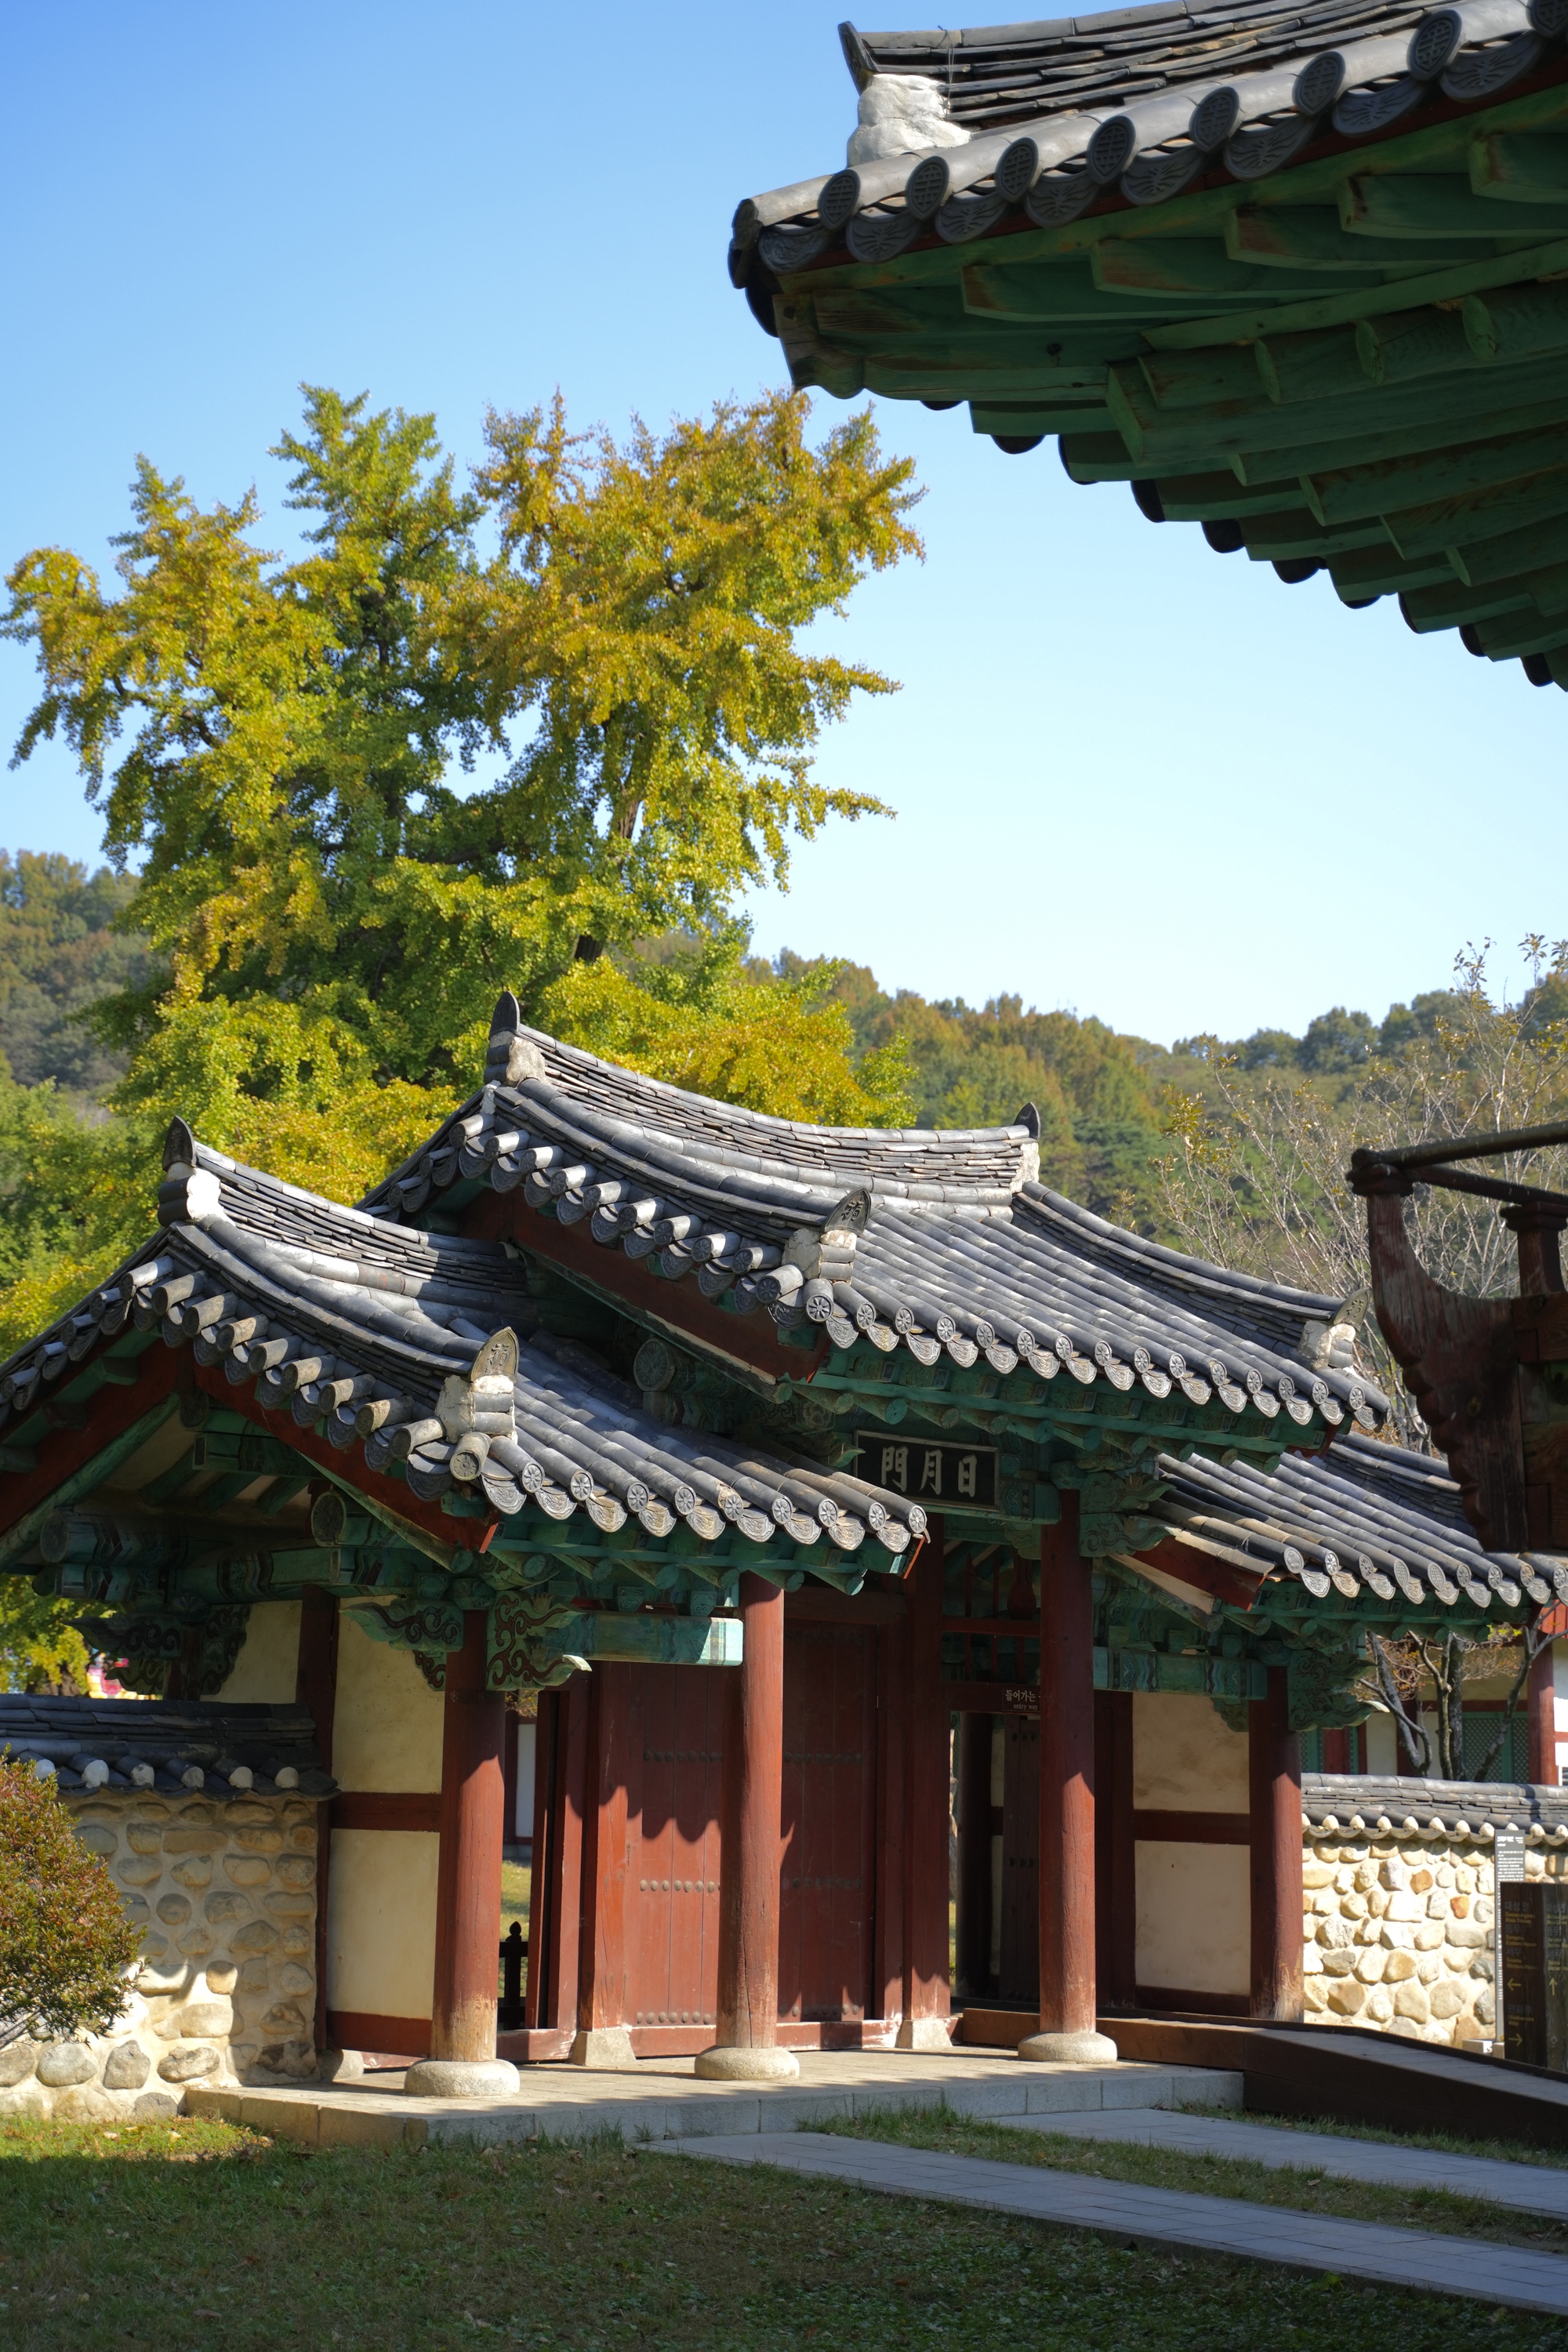 Mùa thu đẹp nao lòng ở làng cổ trăm năm tuổi của Hàn Quốc - Ảnh 3.